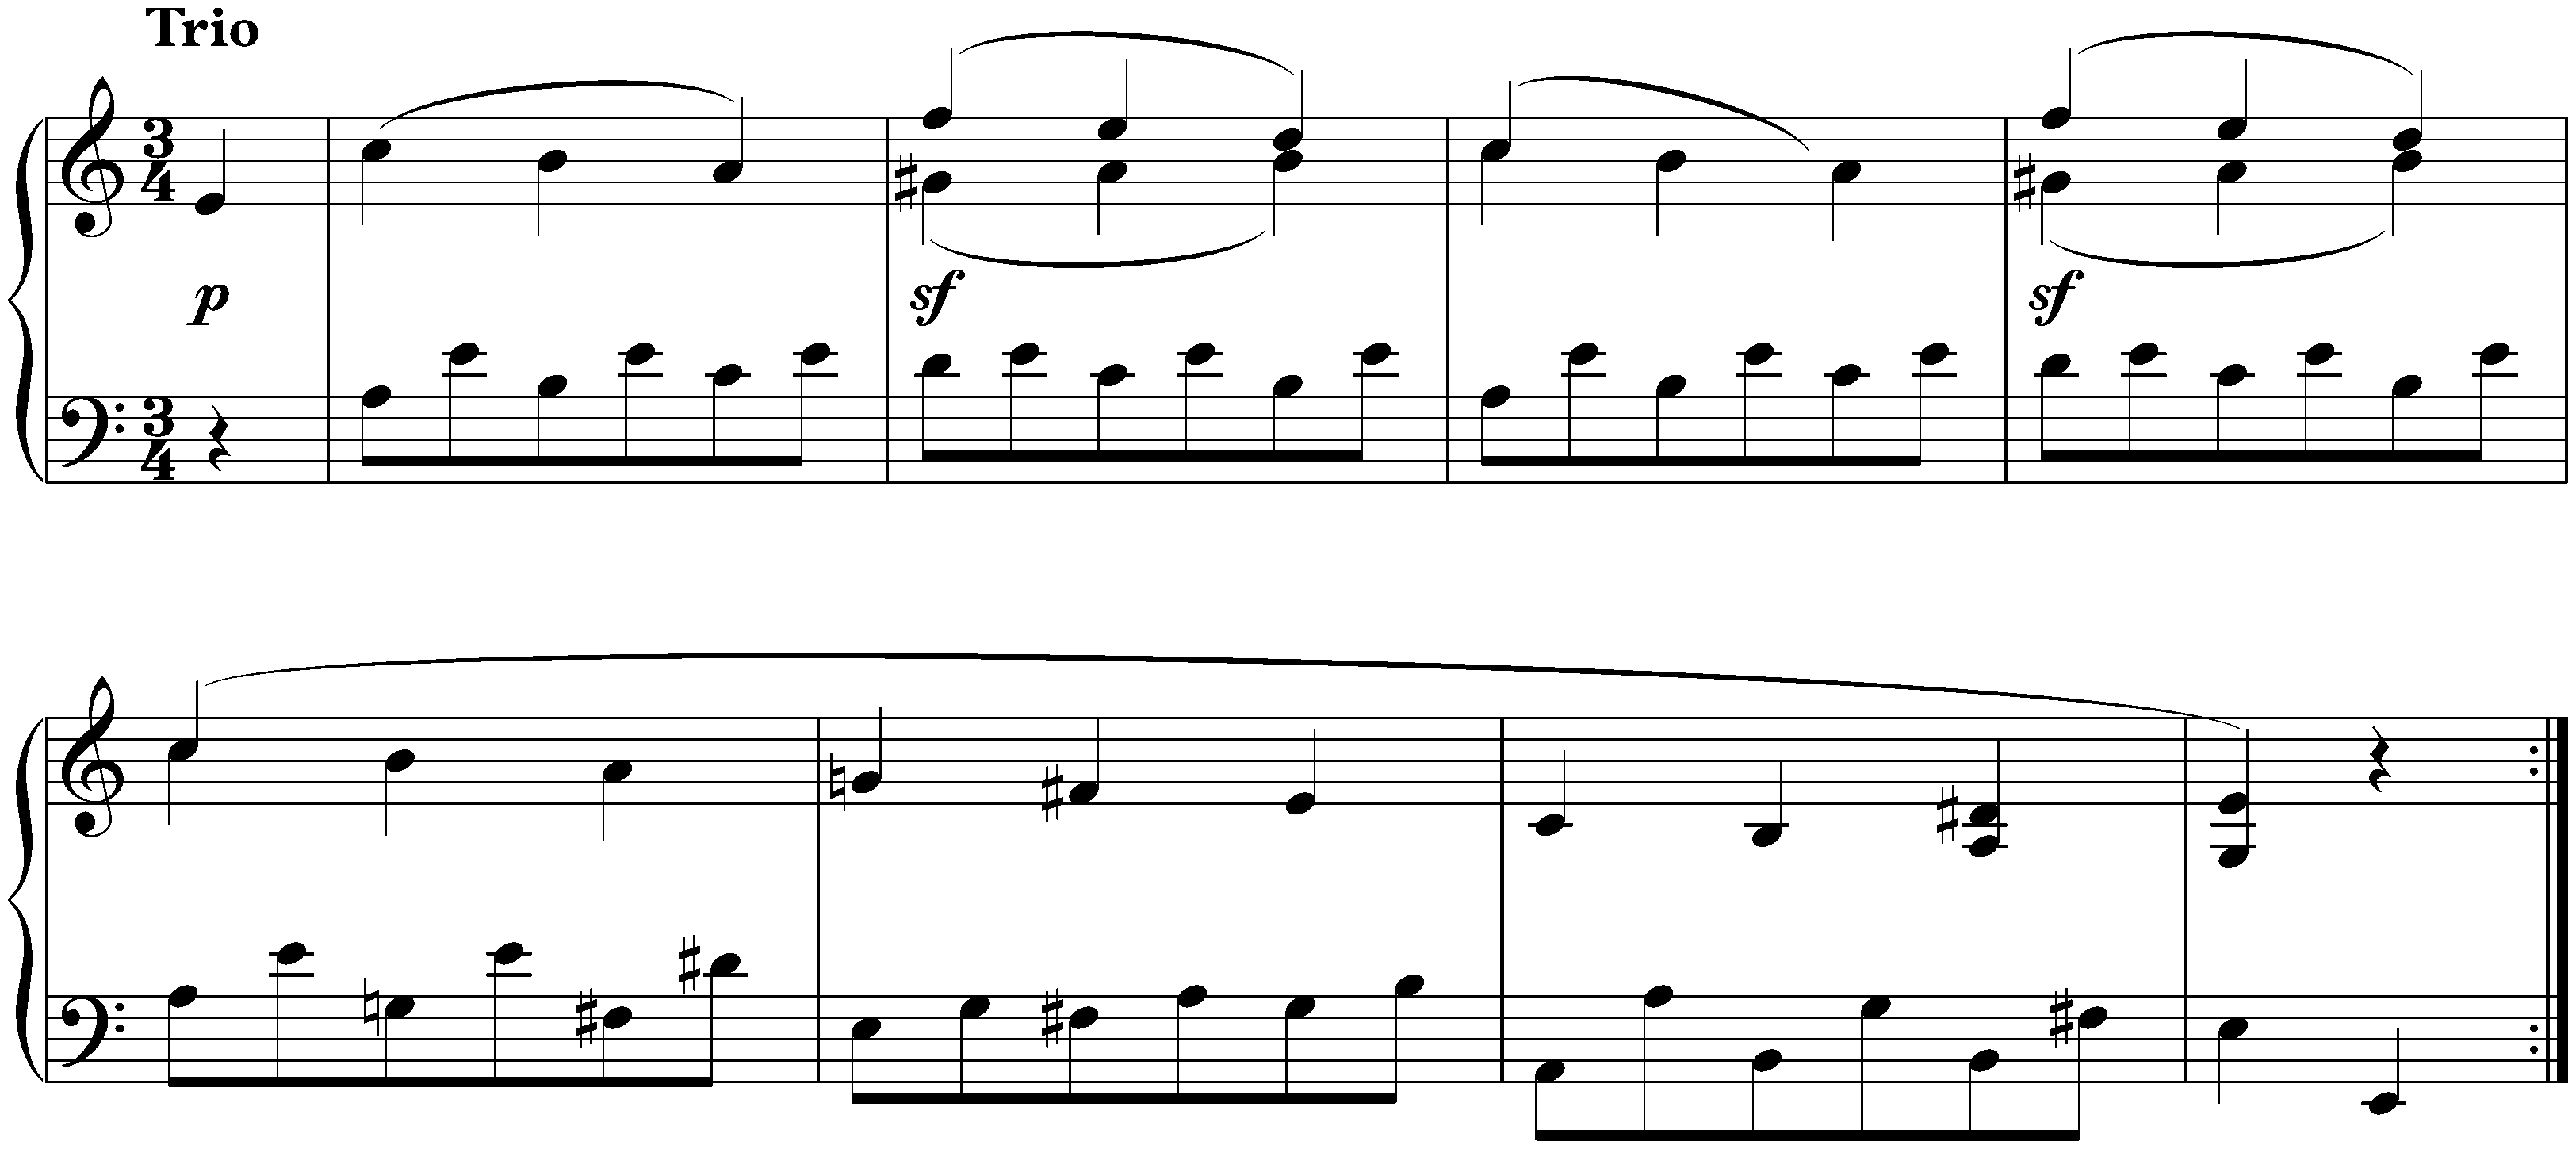 Sonata no. 2 in A major, op. 2 no. 2; 3. Scherzo: Allegretto